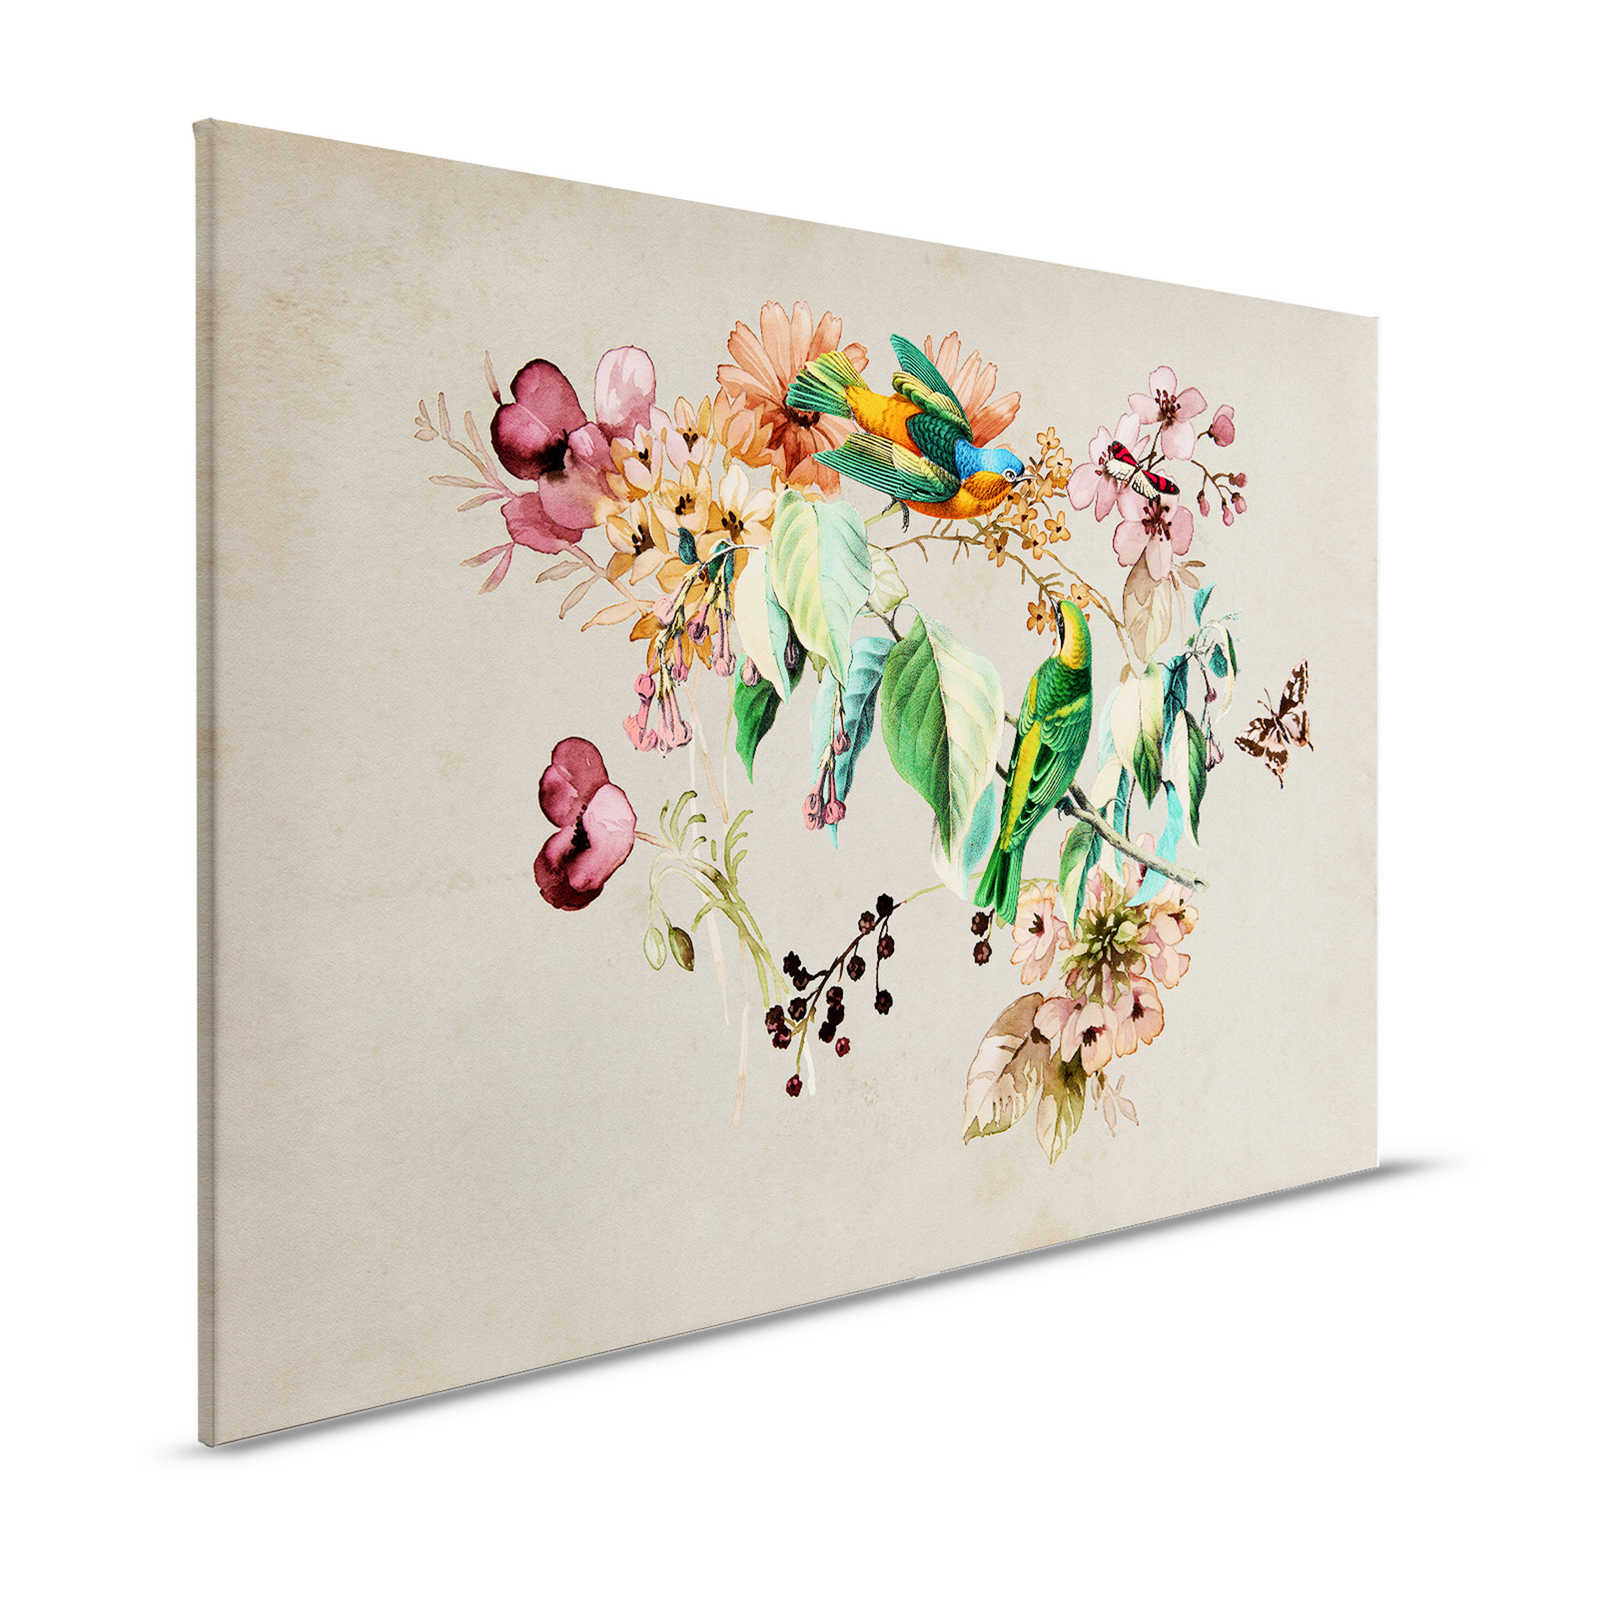 Love Nest 1 - Tableau toile avec fleurs aquarelles & oiseaux colorés - 1,20 m x 0,80 m
